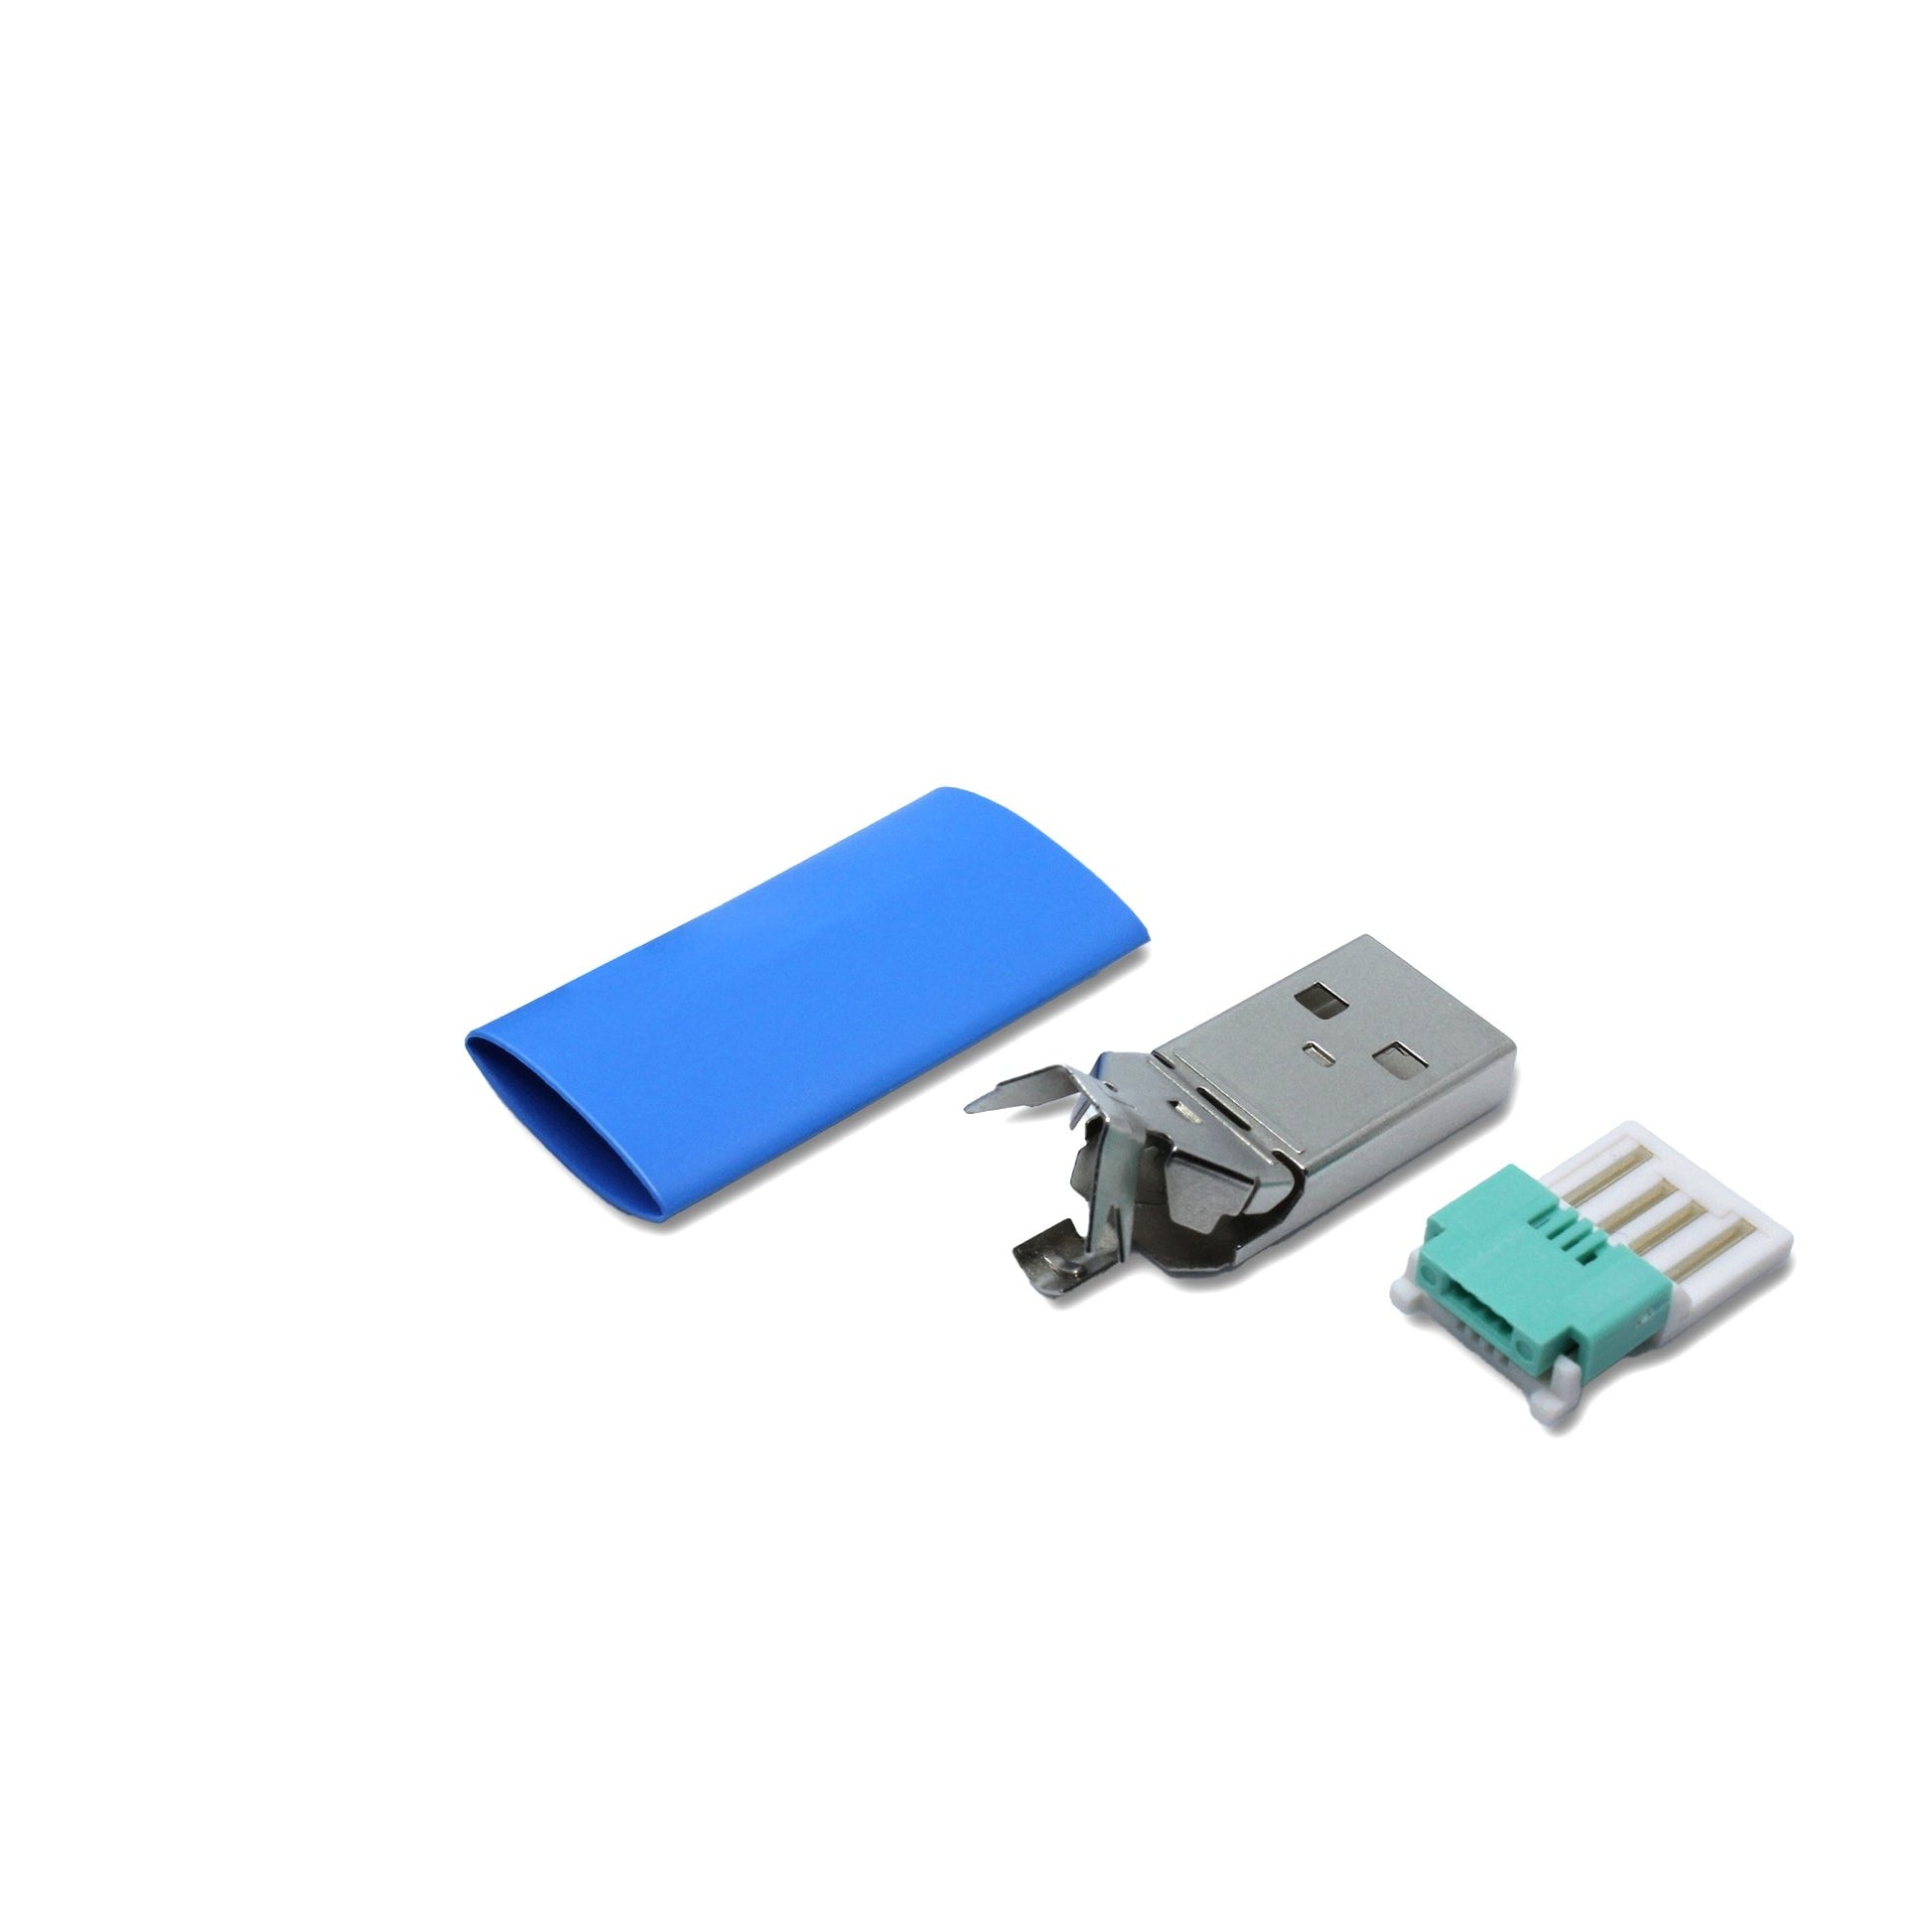 Einzelteile USB A Stecker in blau, mit dem Ersatzteil kann ein USB 2.0 Kabel lötfrei (crimpen) repariert werden